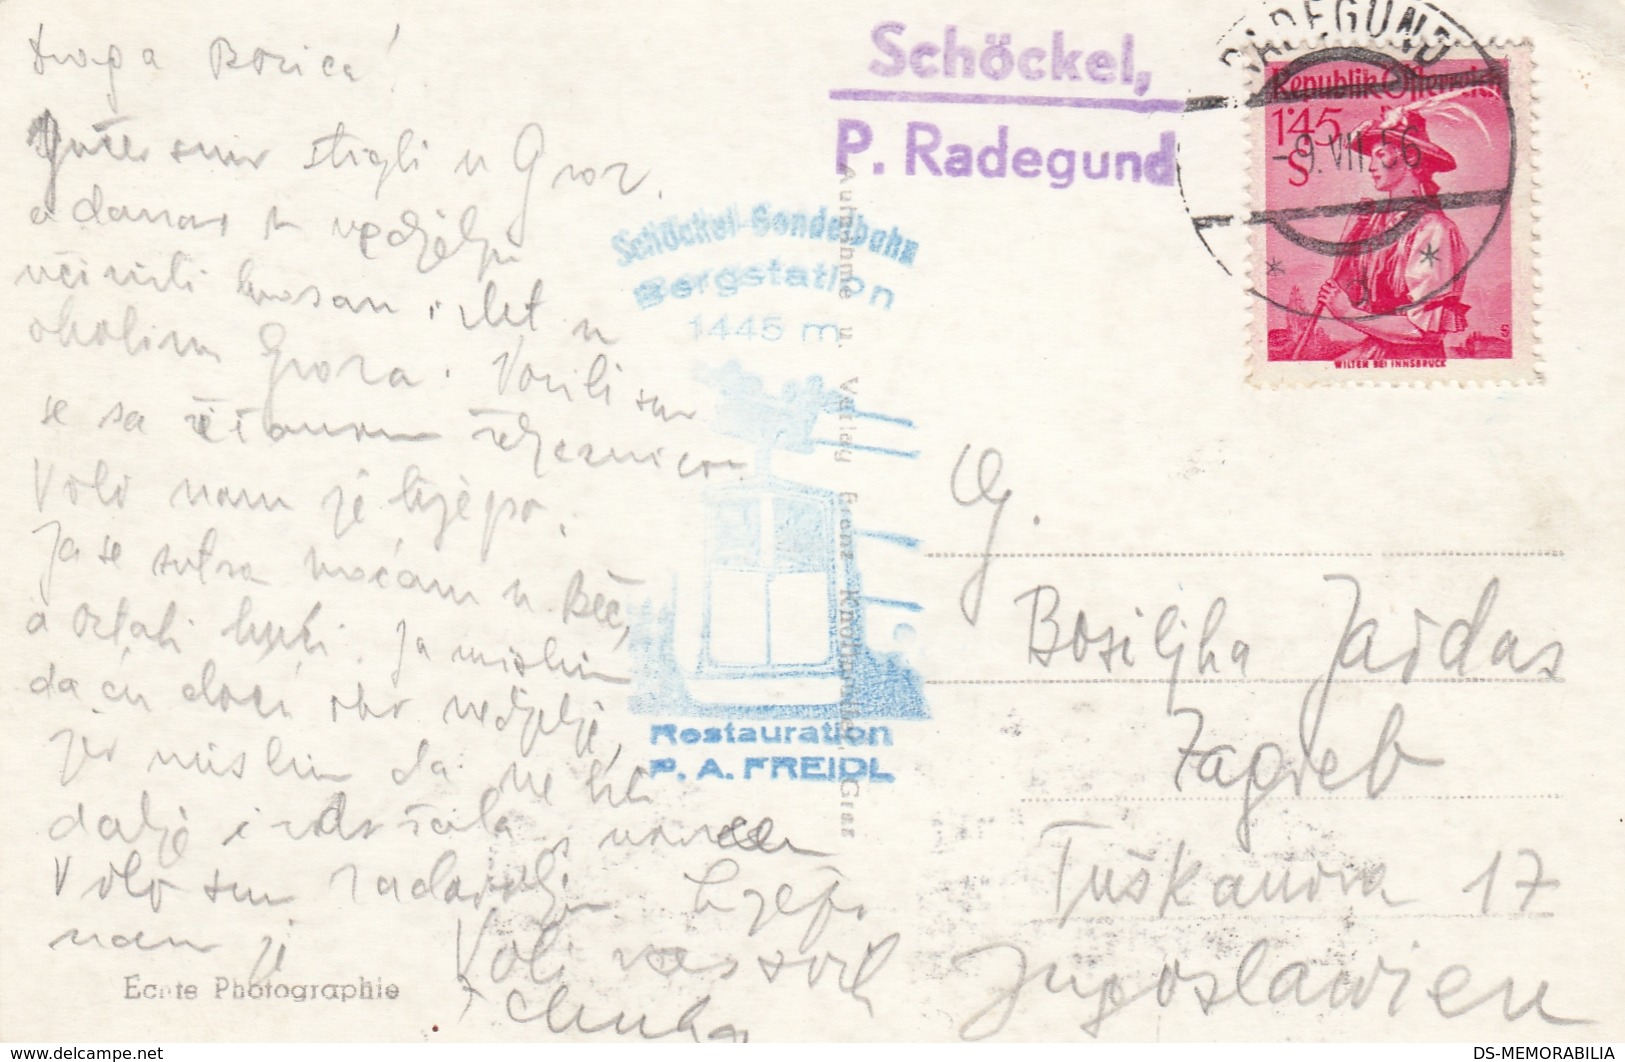 St Radegund Postablage Schockel Post Radegund 1956 - St. Radegund